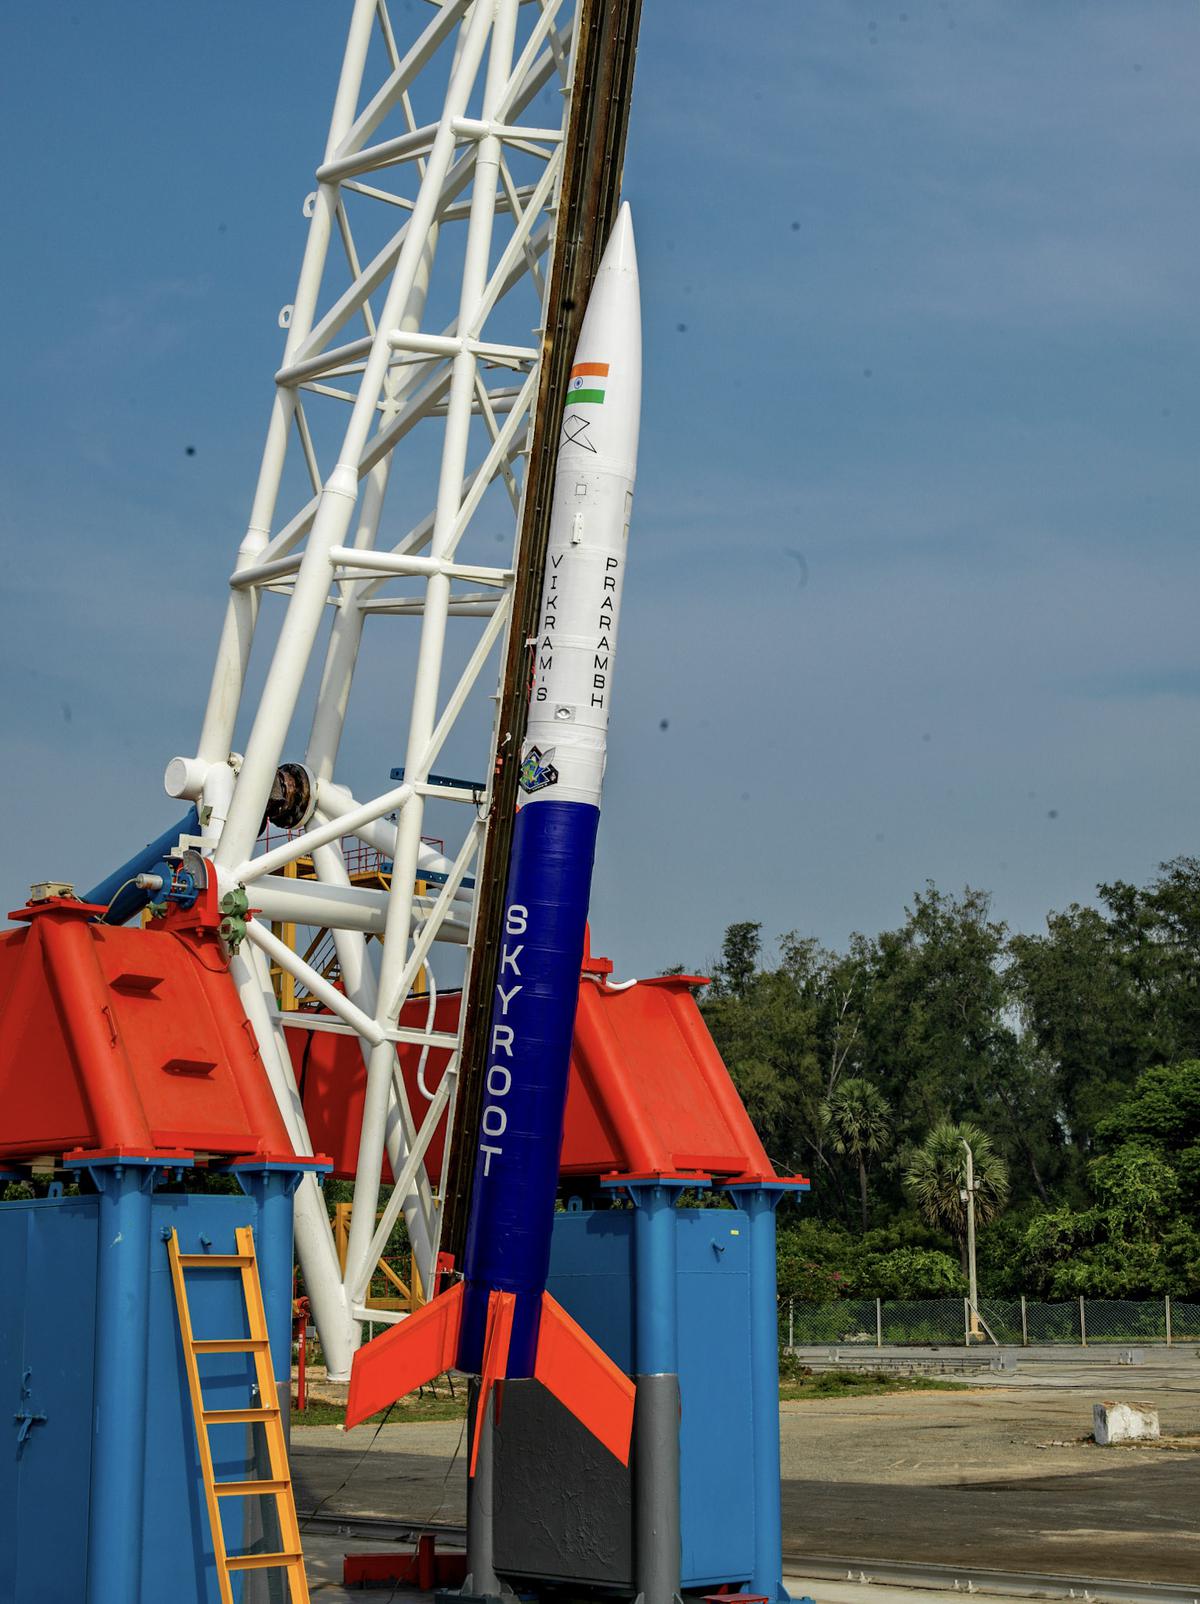 Skyroot’s launch vehicle Vikram-S ready for launch at Sriharikota in November 2022